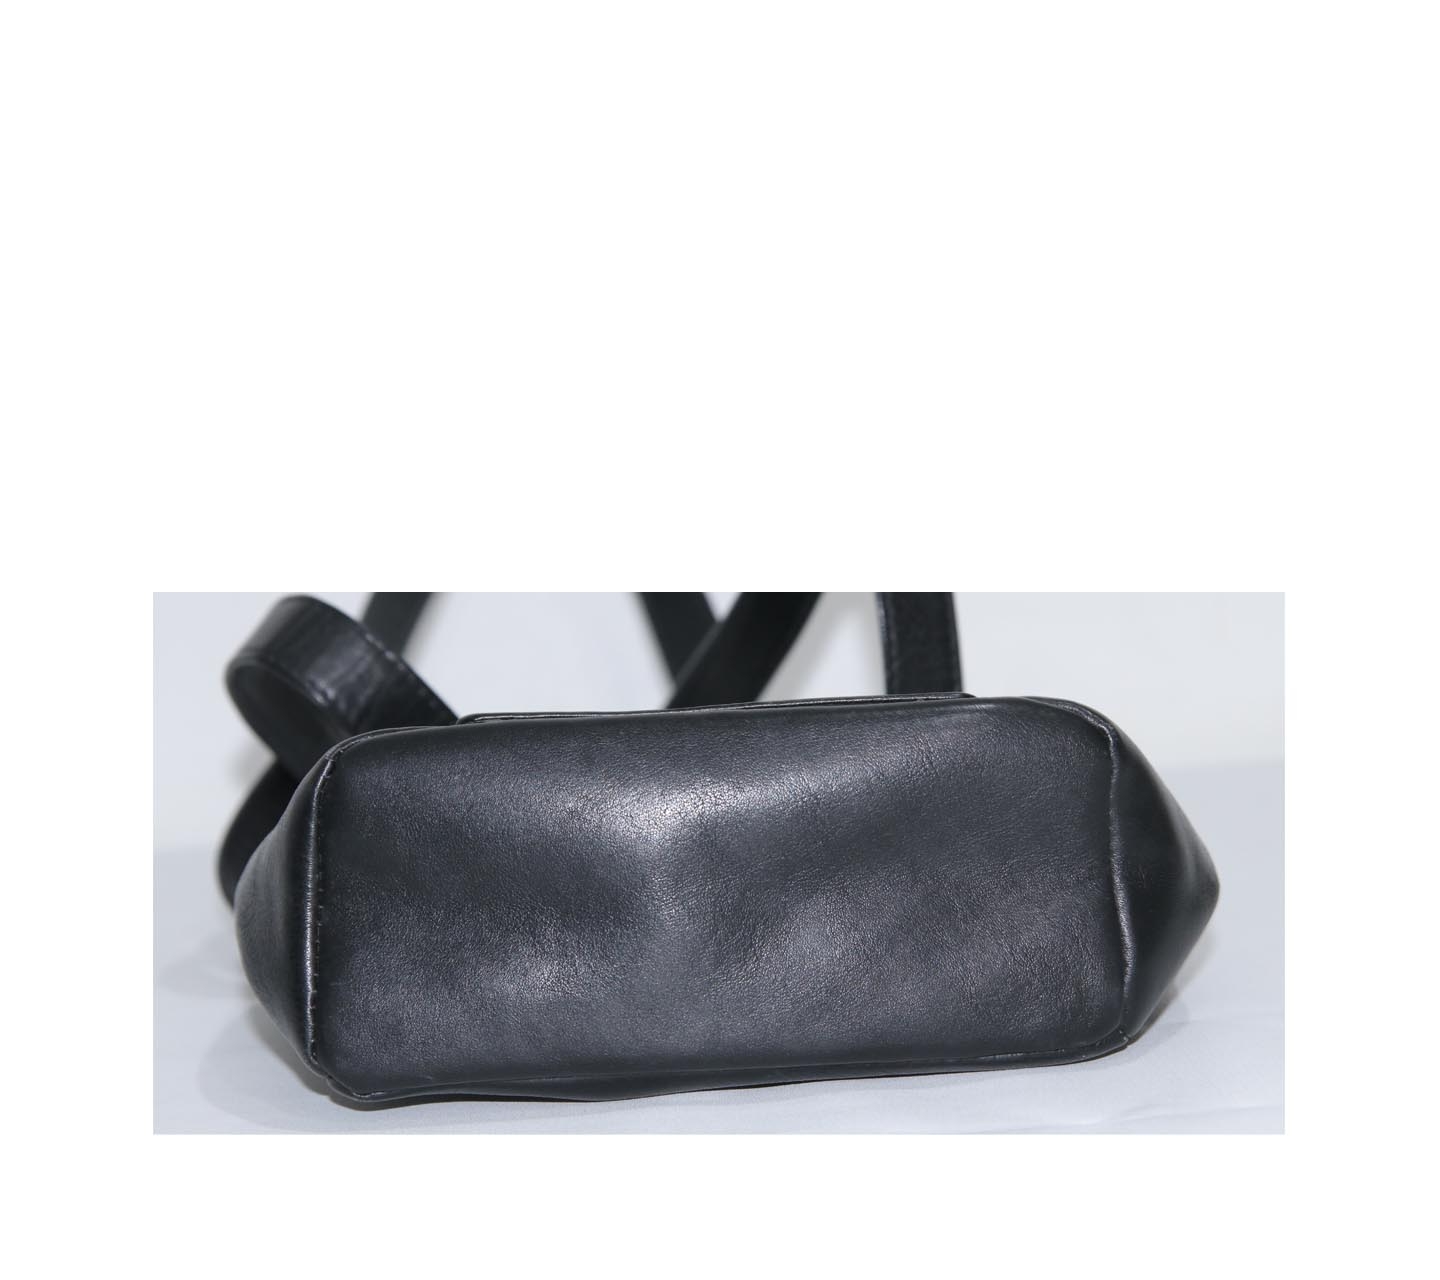 Gianni Versace Black Leather Vintage Shoulder Bag